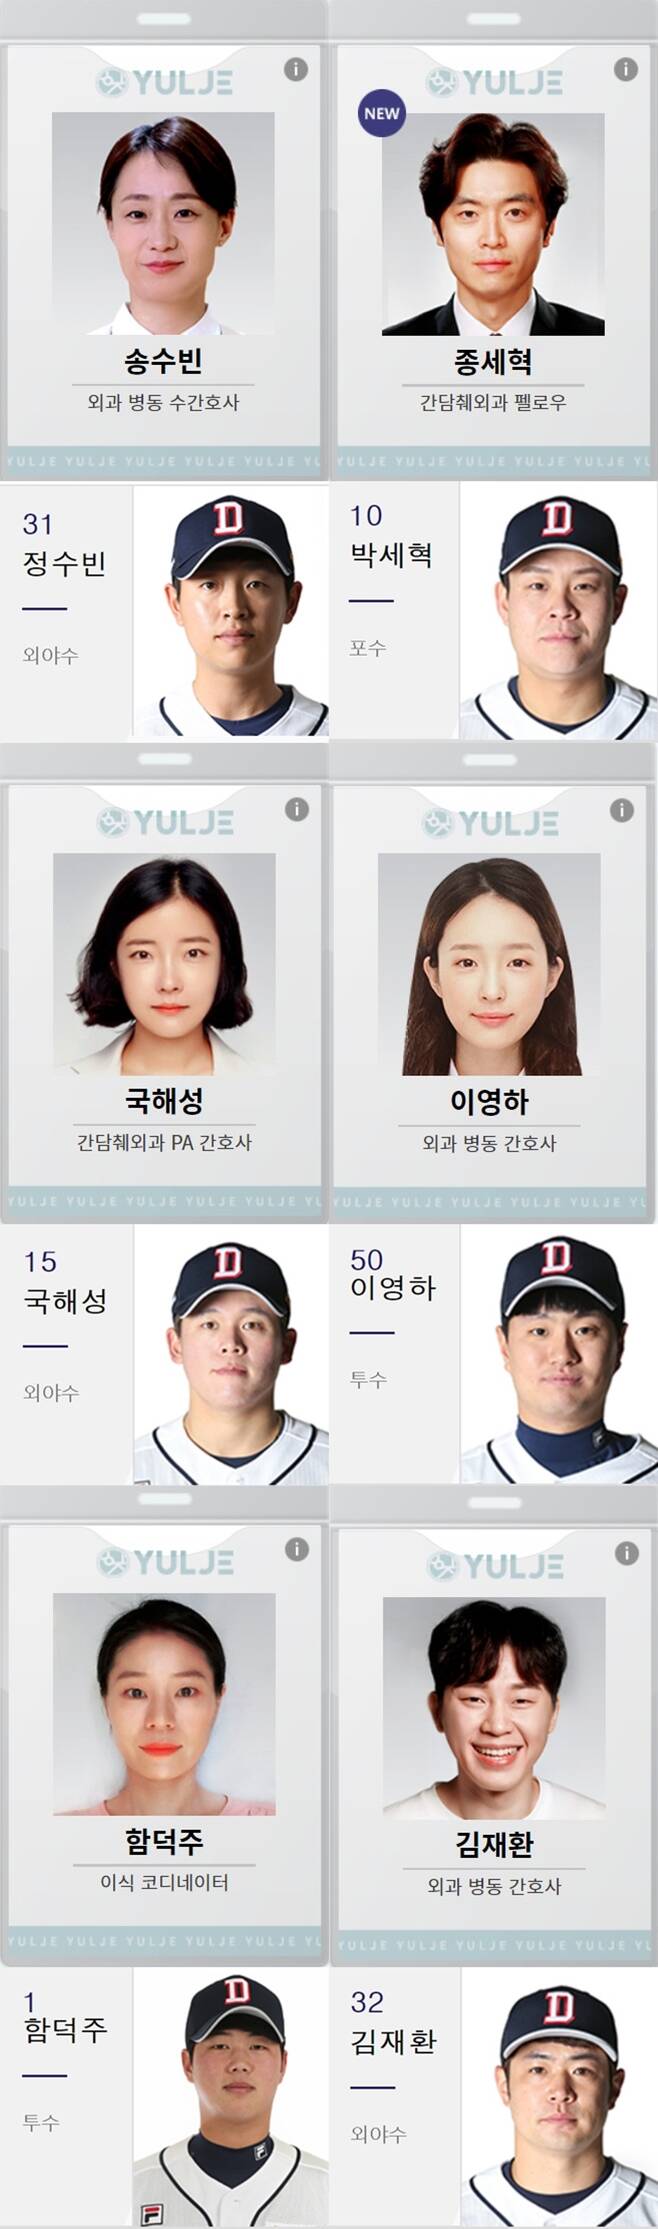 ▲ 실제 야구선수와 이름이 같은 슬기로운 의사생활 등장인물 배역 이름. 출처ㅣ두산베어스 공식 홈페이지, tvN 슬기로운 의사생활 공식 홈페이지 캡처